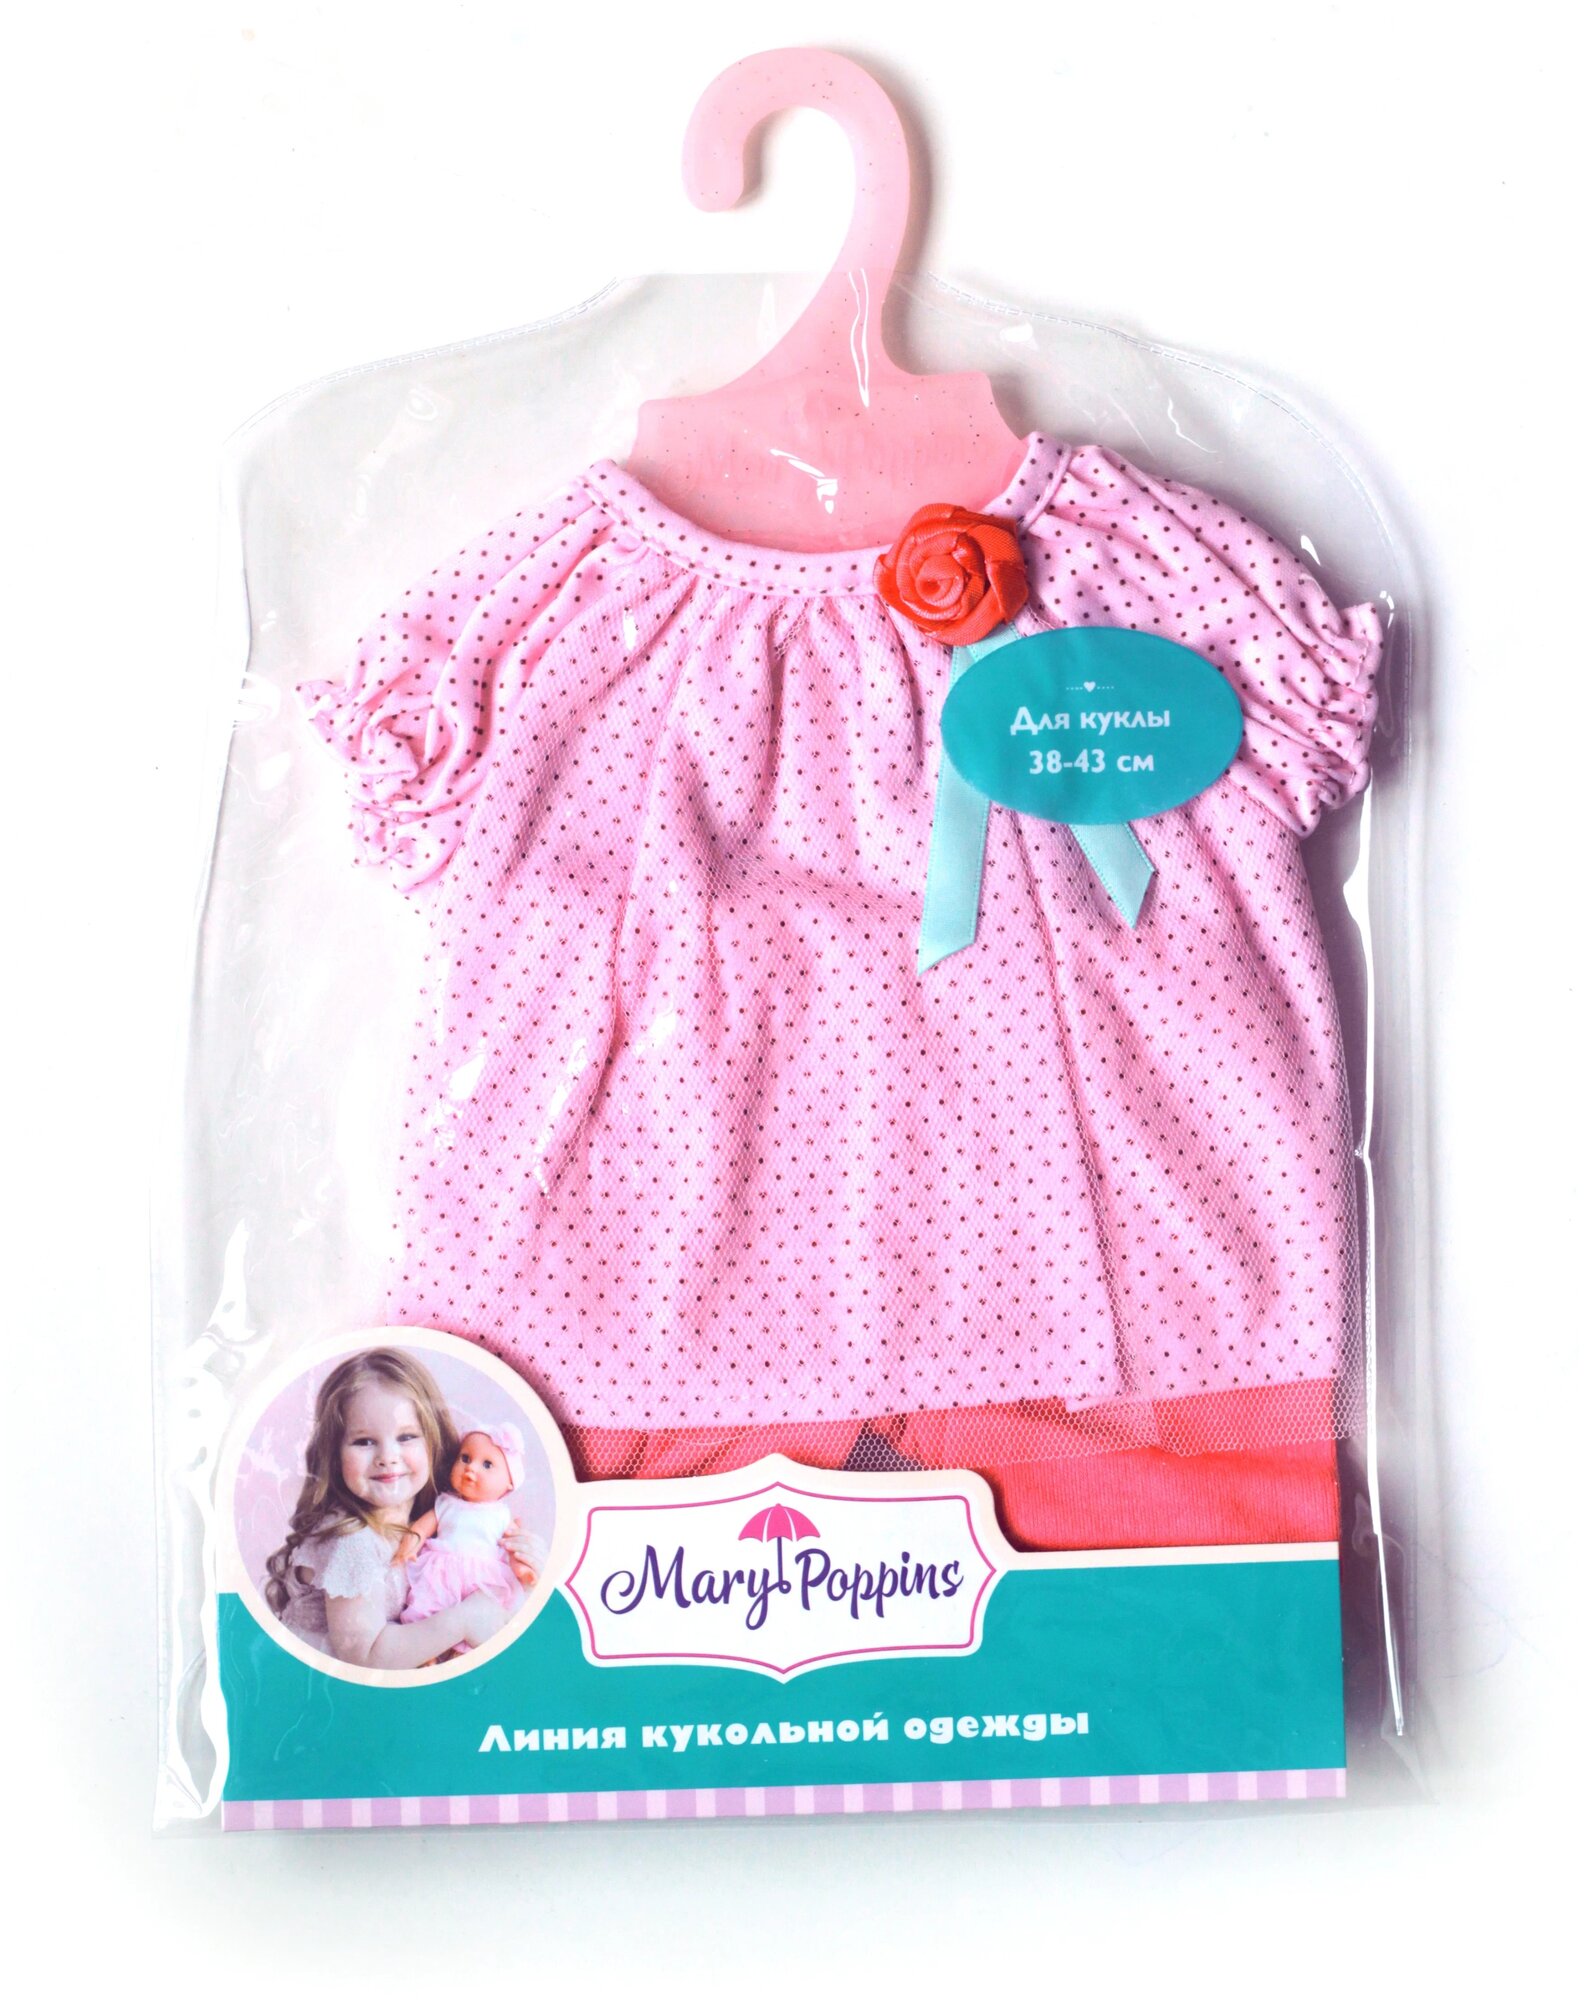 Одежда для кукол Mary Poppins блуза и штанишки Мэри 38-43 см - фото №7